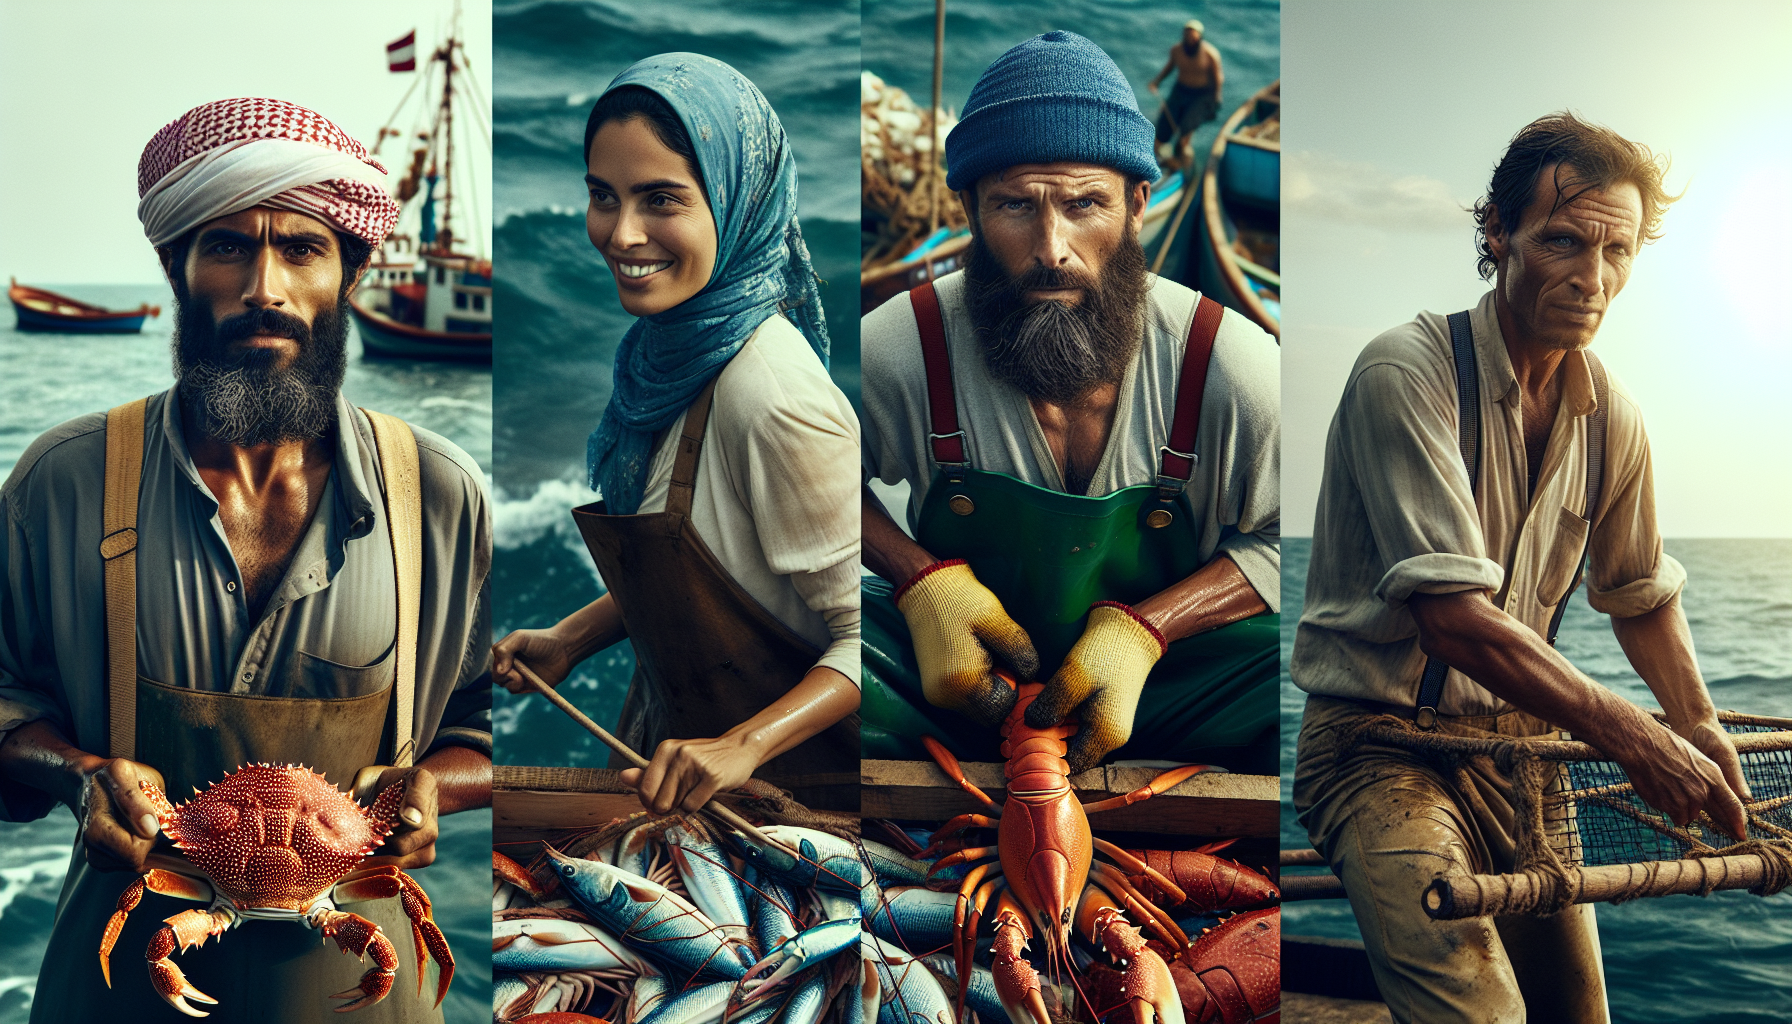 Người dân bắt cua, bắt ghẹ và bắt cá trên biển là những người nông dân ven biển.